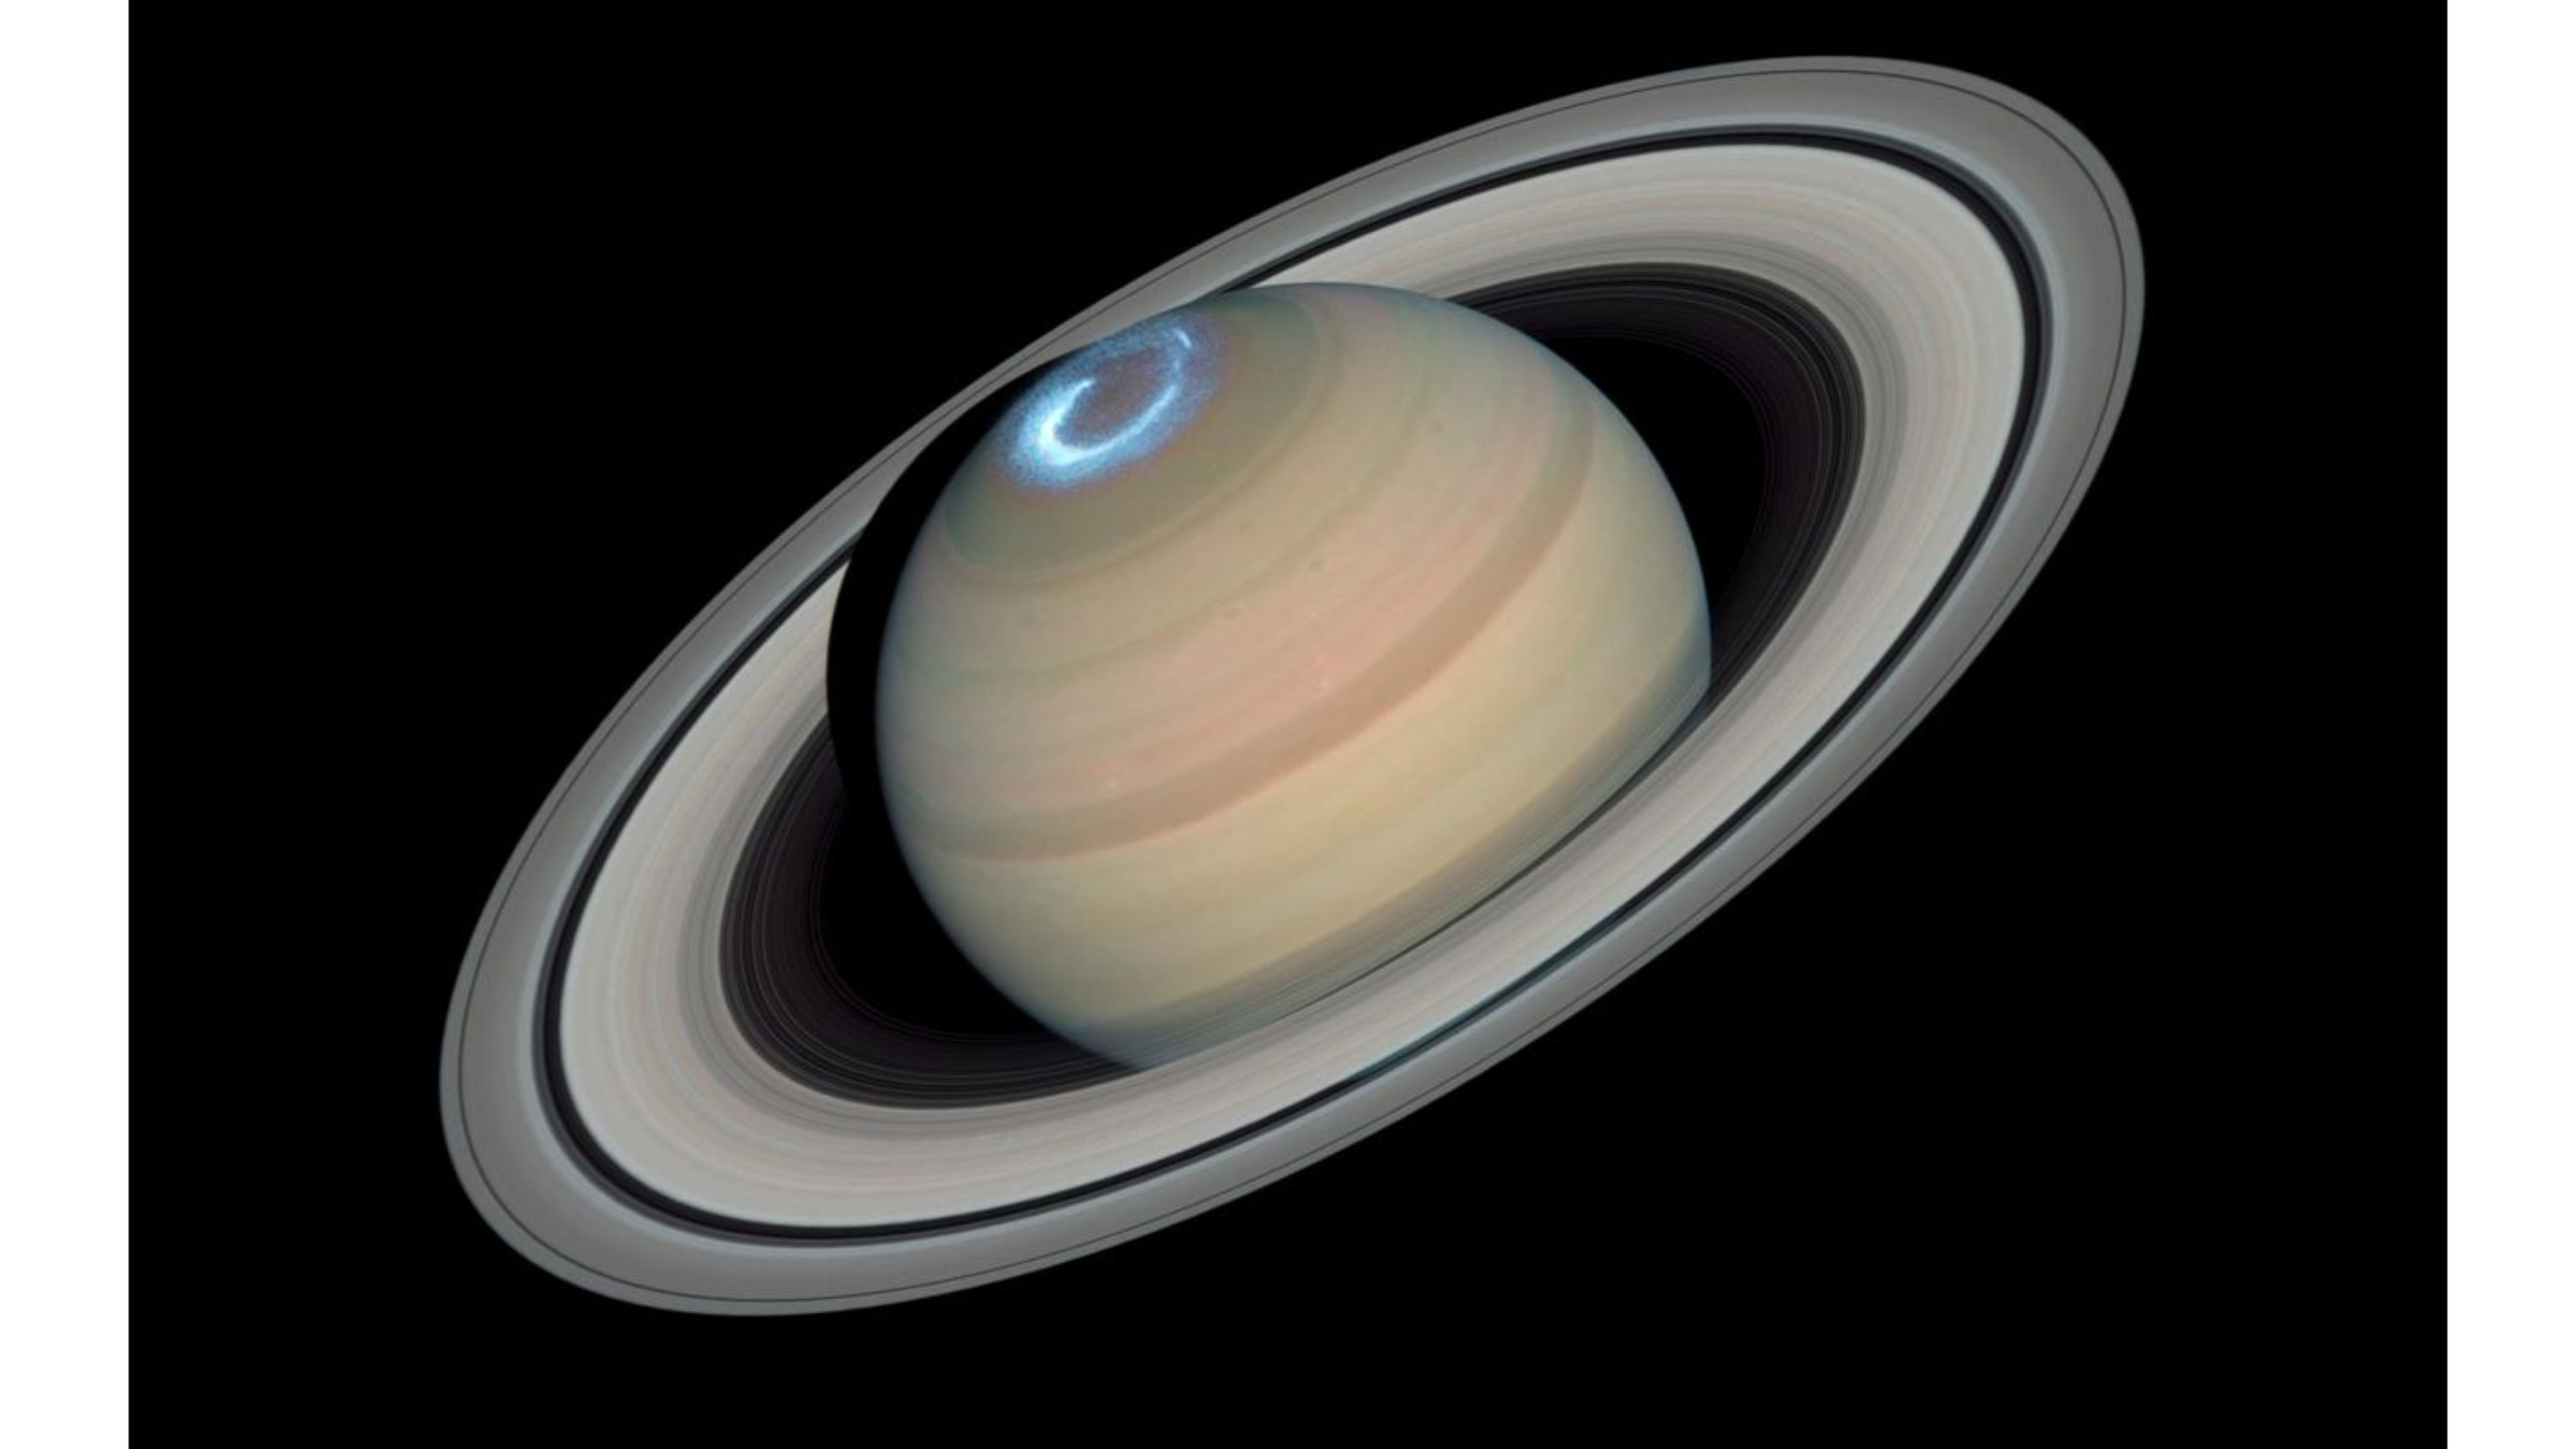 66+] Saturn Wallpaper - WallpaperSafari